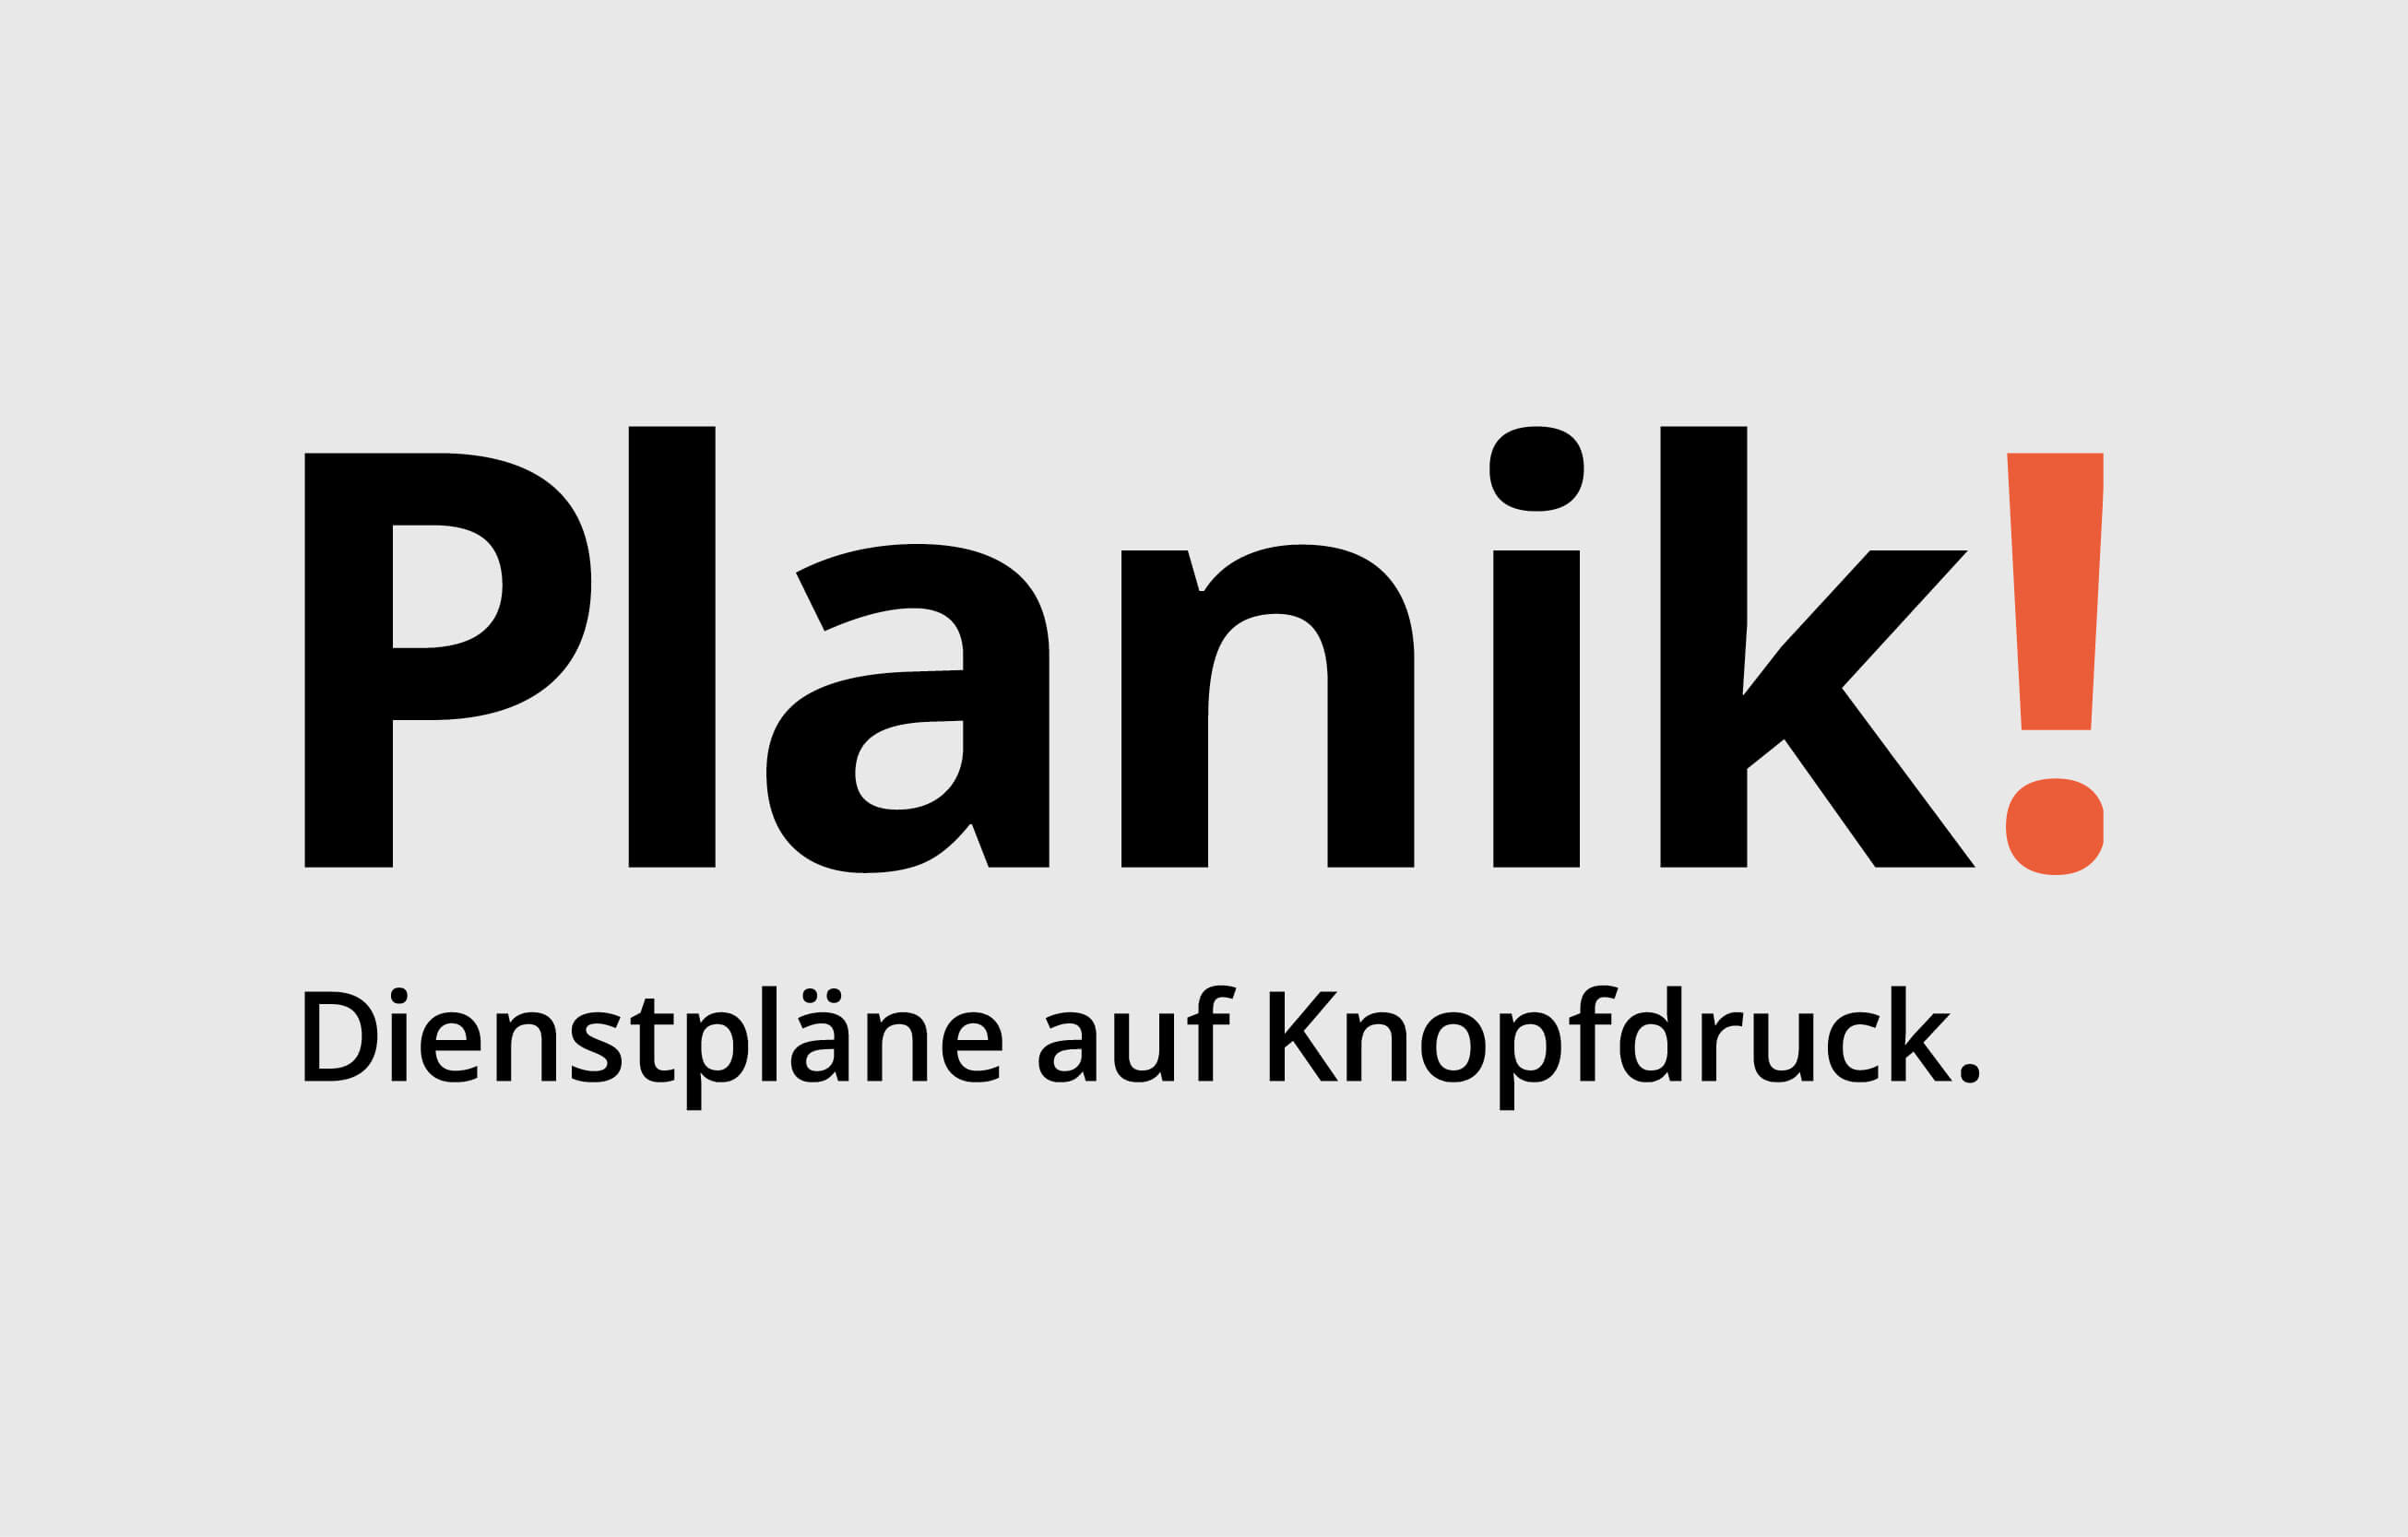 Kundenzeitschrift Planik! consign identity